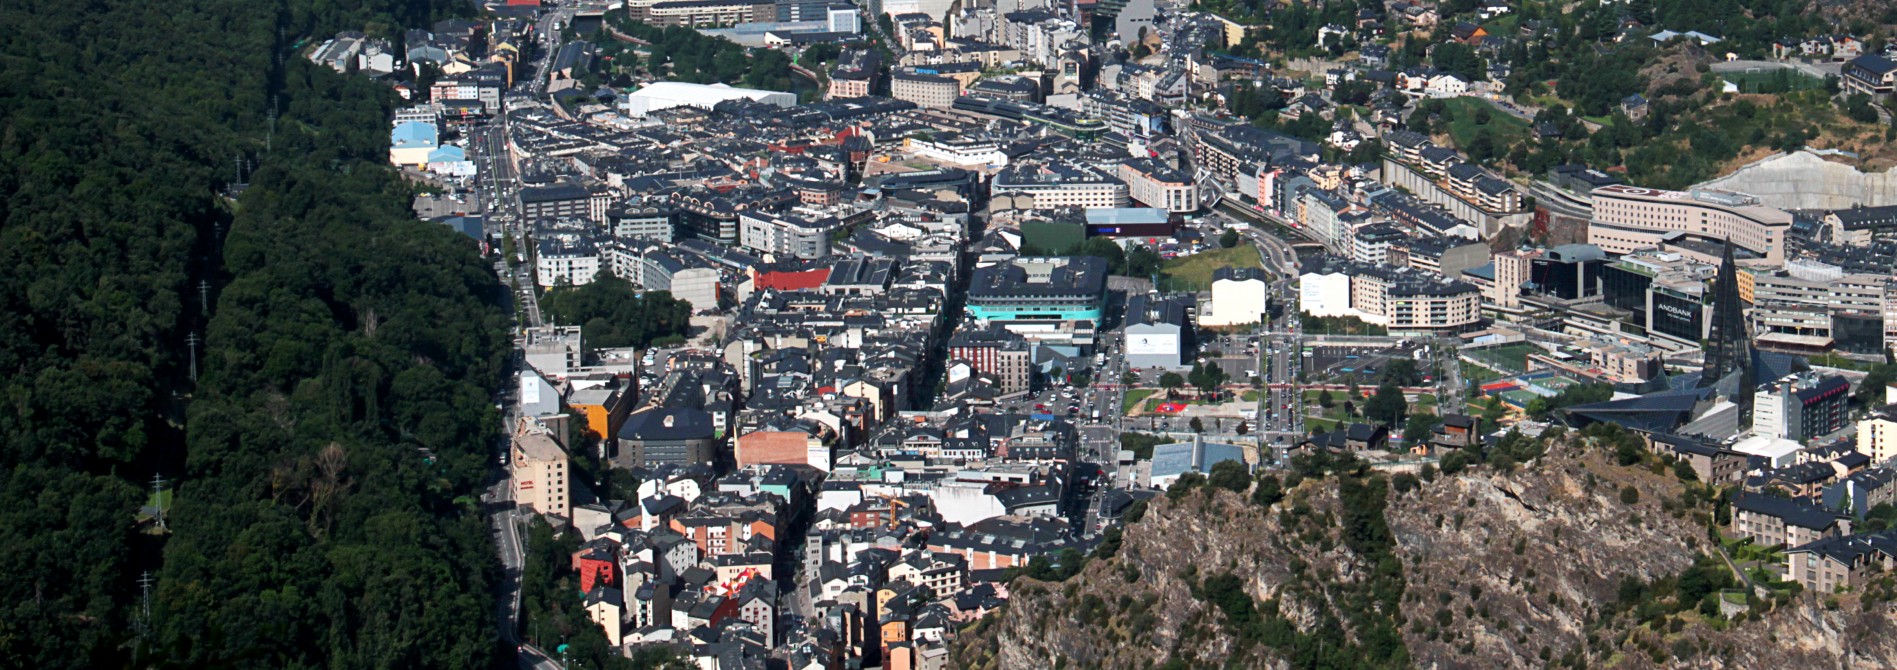 Andorra incrementa las subvenciones para que los edificios sean energéticamente más eficientes